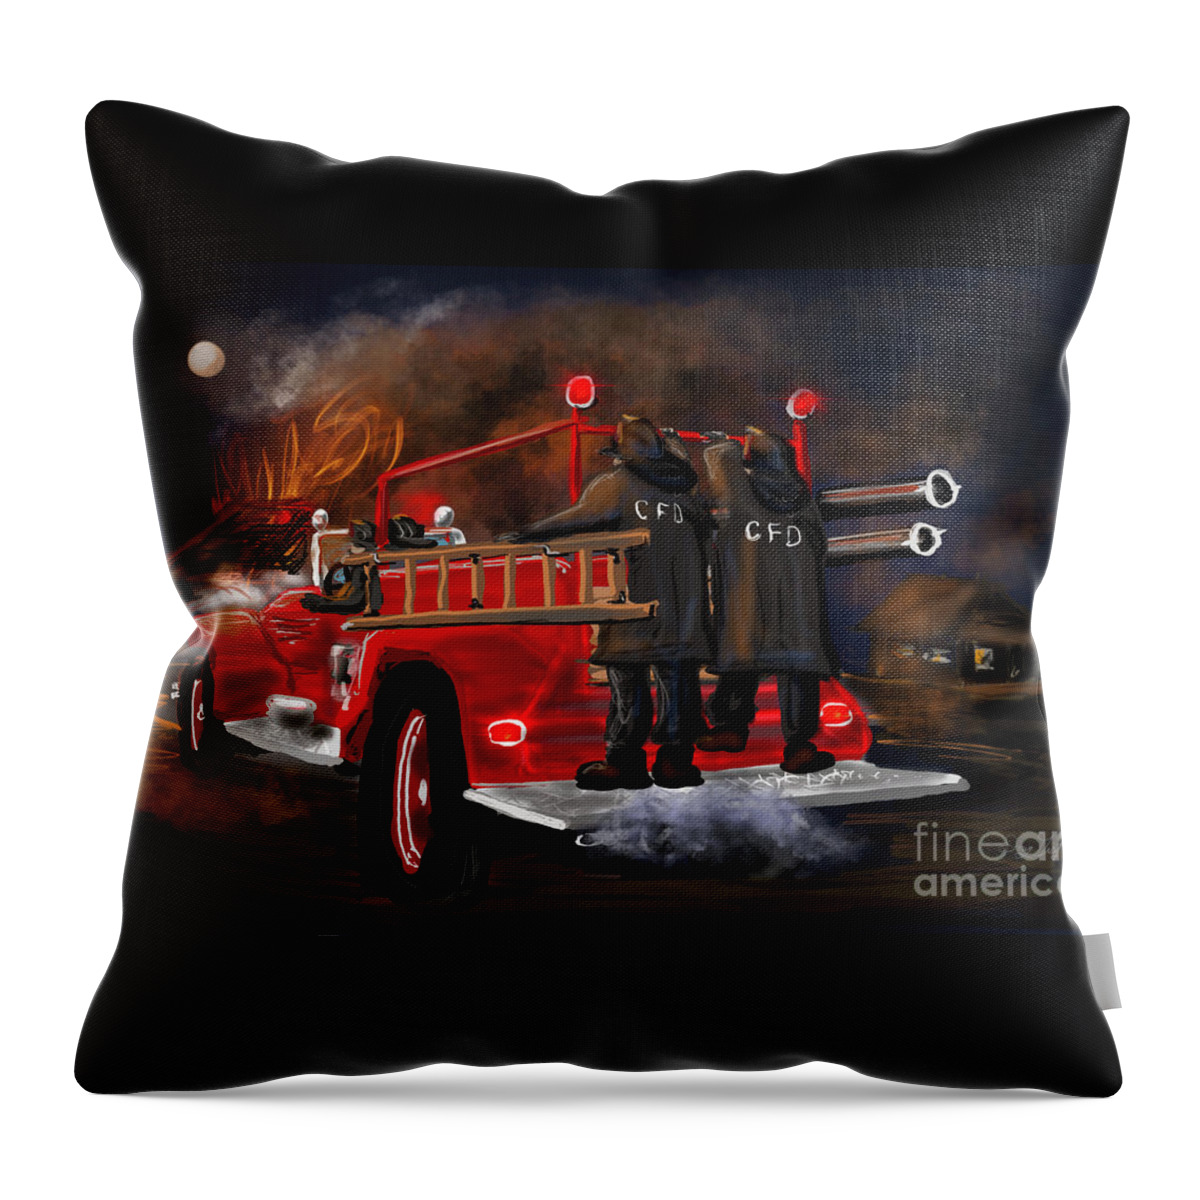 Fire Truck Throw Pillow featuring the digital art Evening Working Fire by Doug Gist